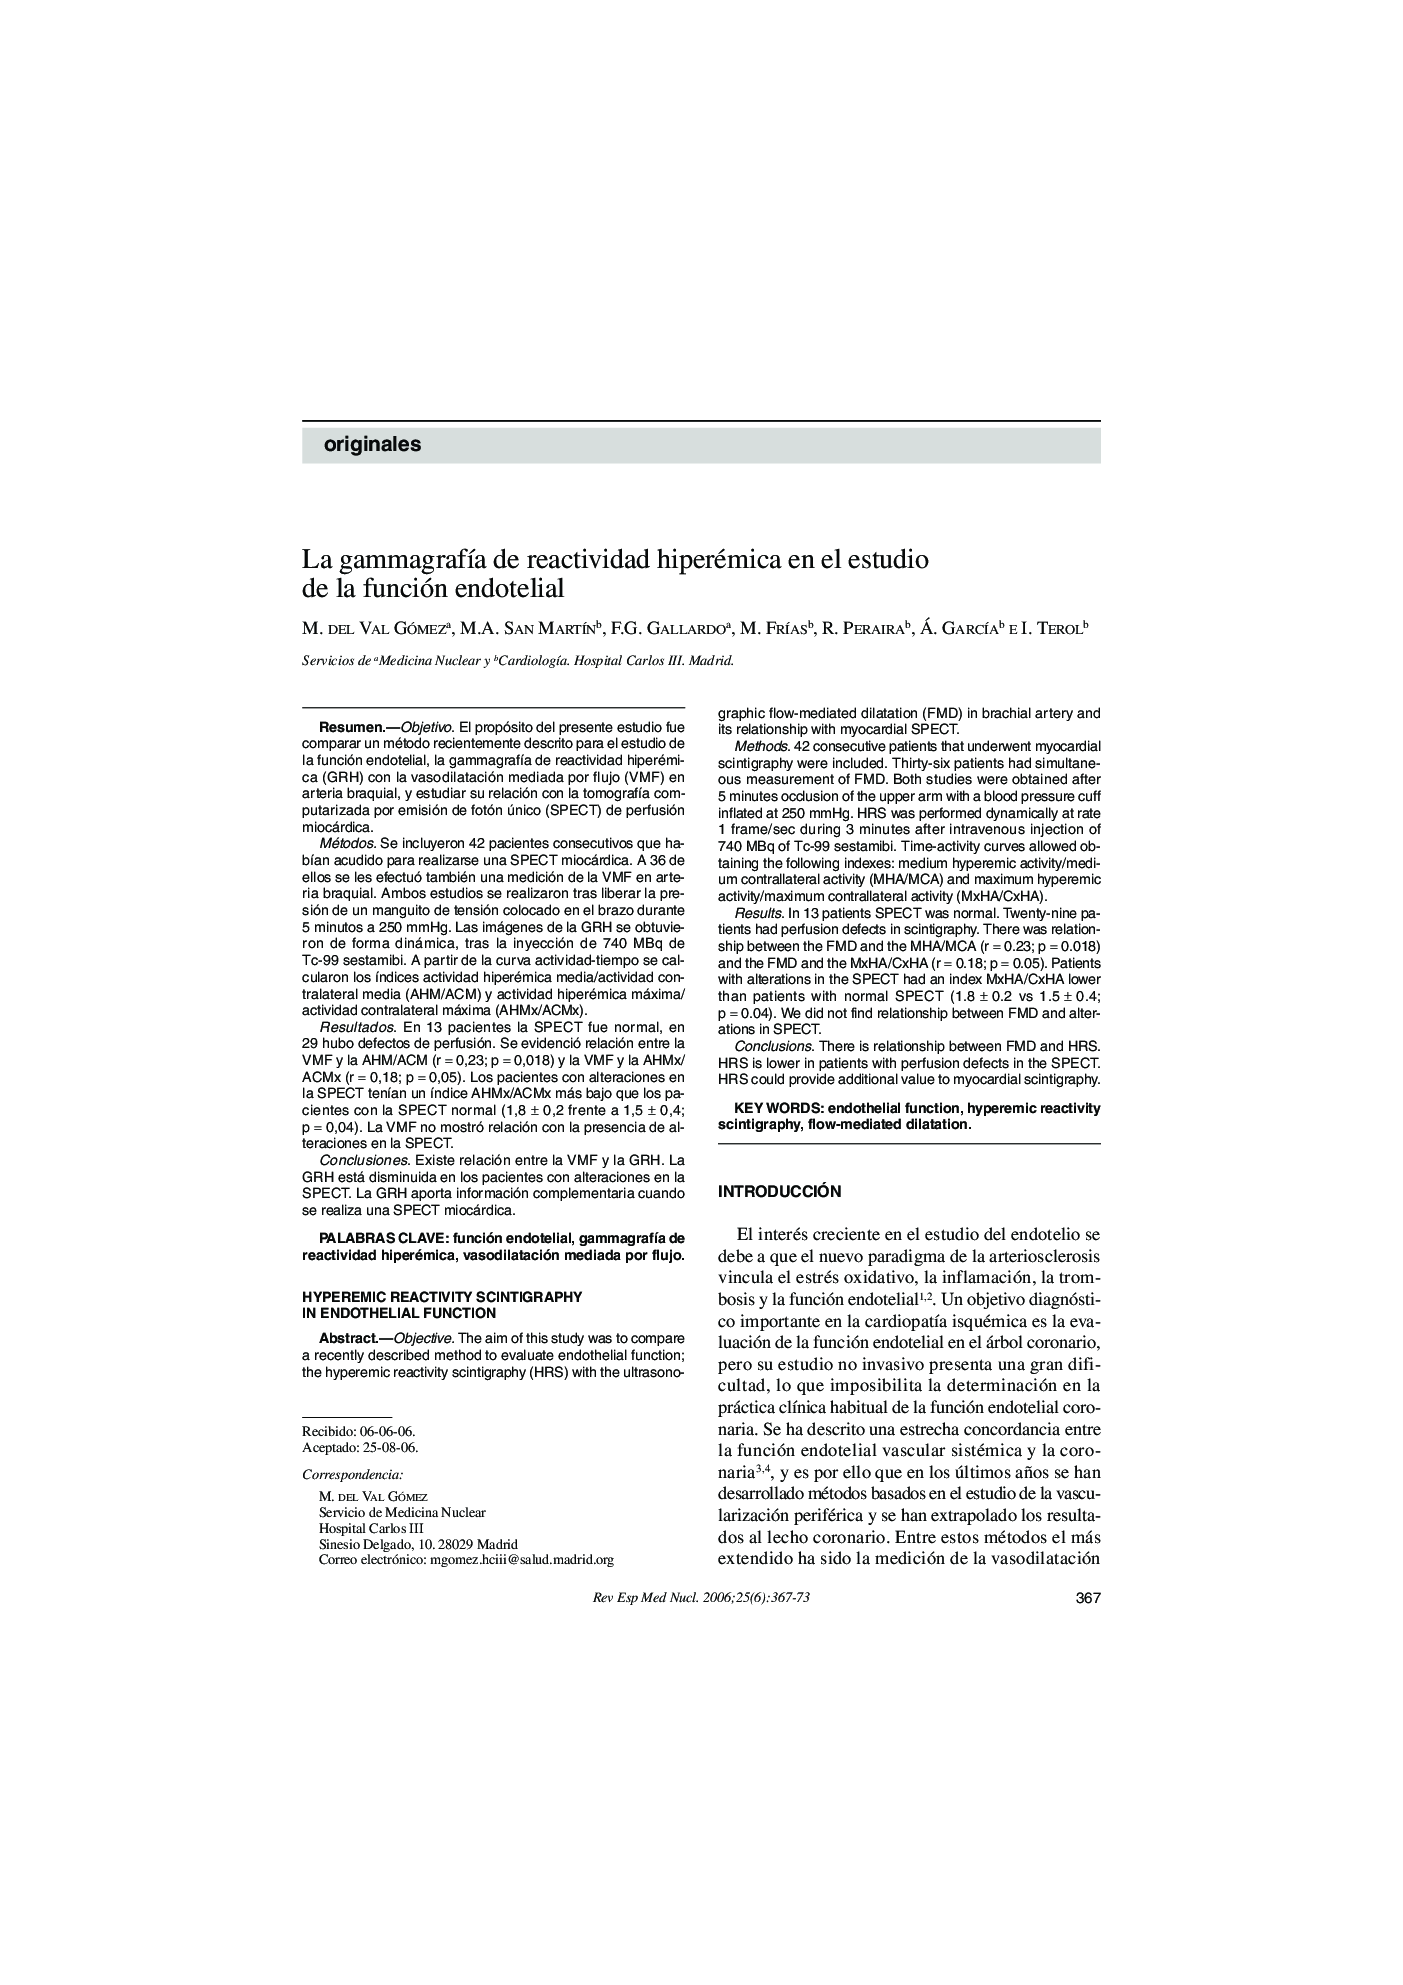 La gammagrafÃ­a de reactividad hiperémica en el estudio de la función endotelial